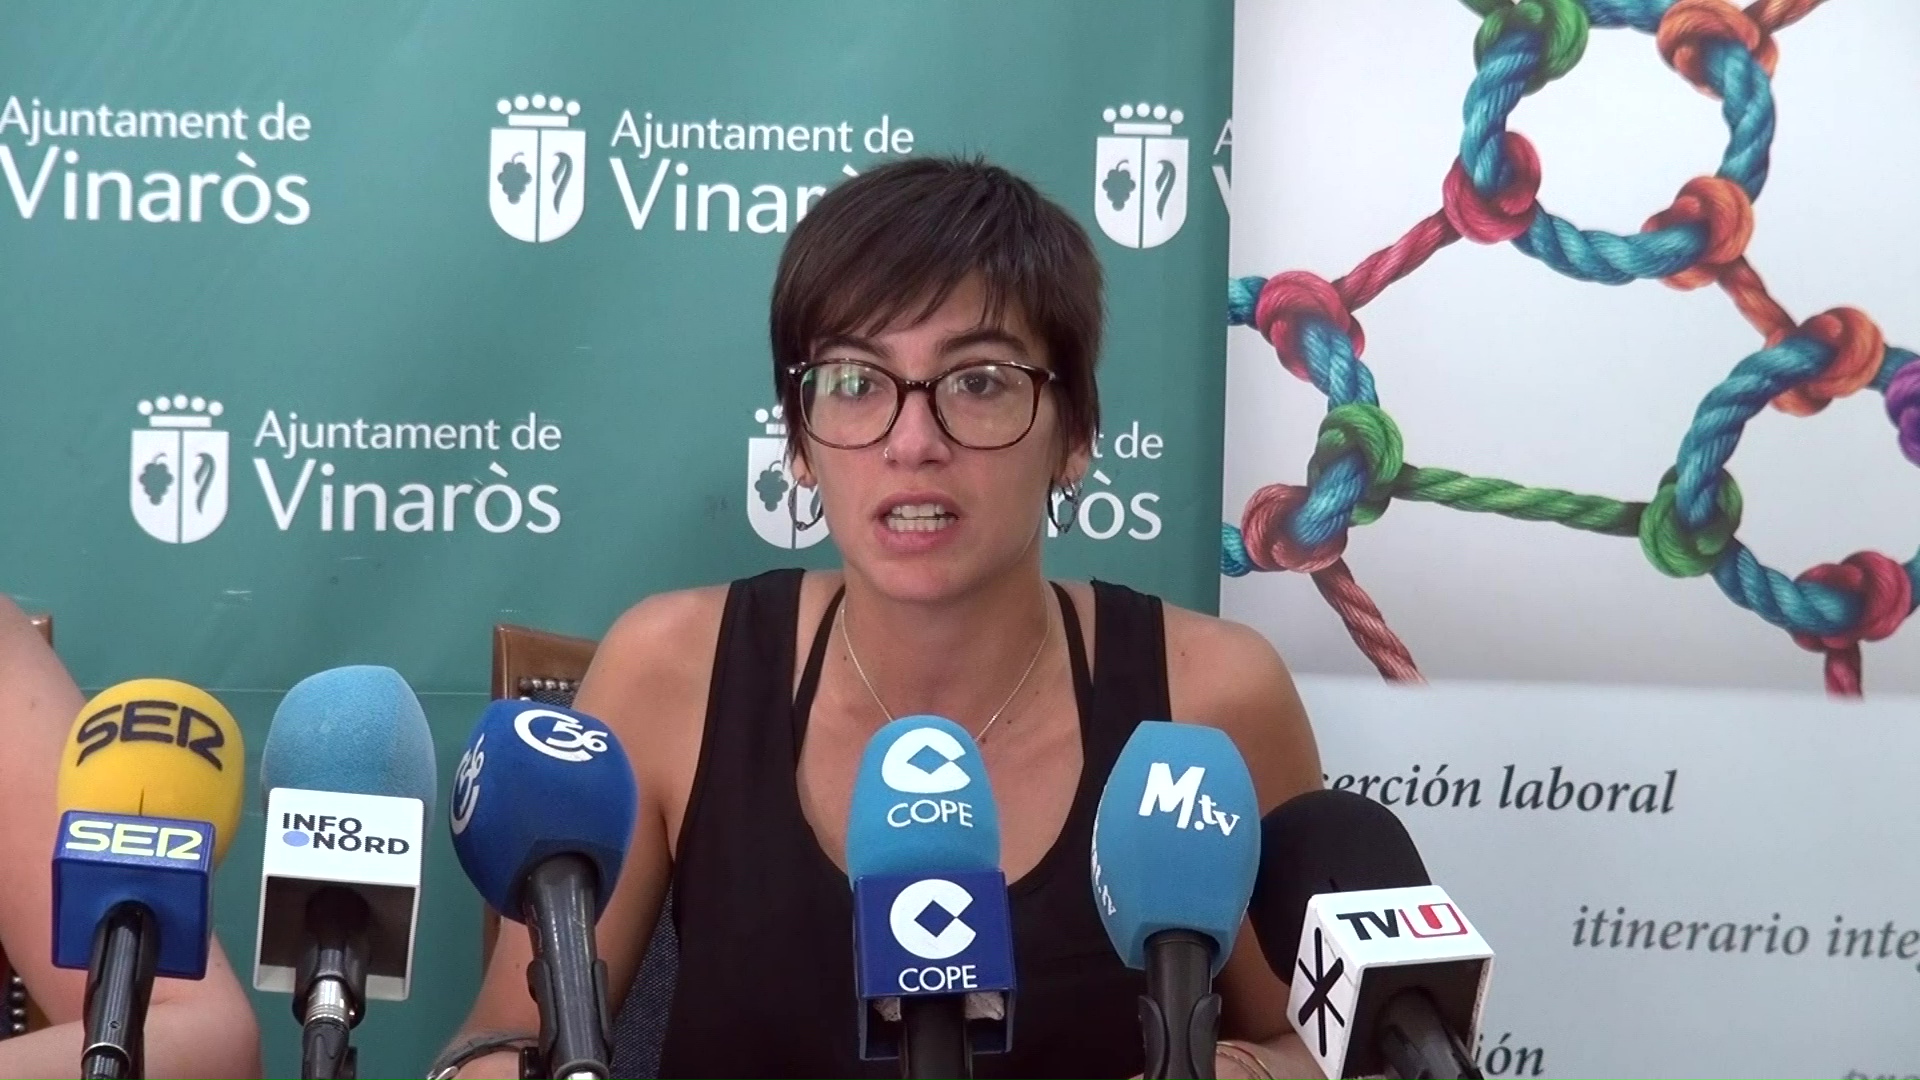 Vinaròs, l'Ajuntament donarà continuïtat al Projecte Itineraris per afavorir la inserció laboral dels veïns